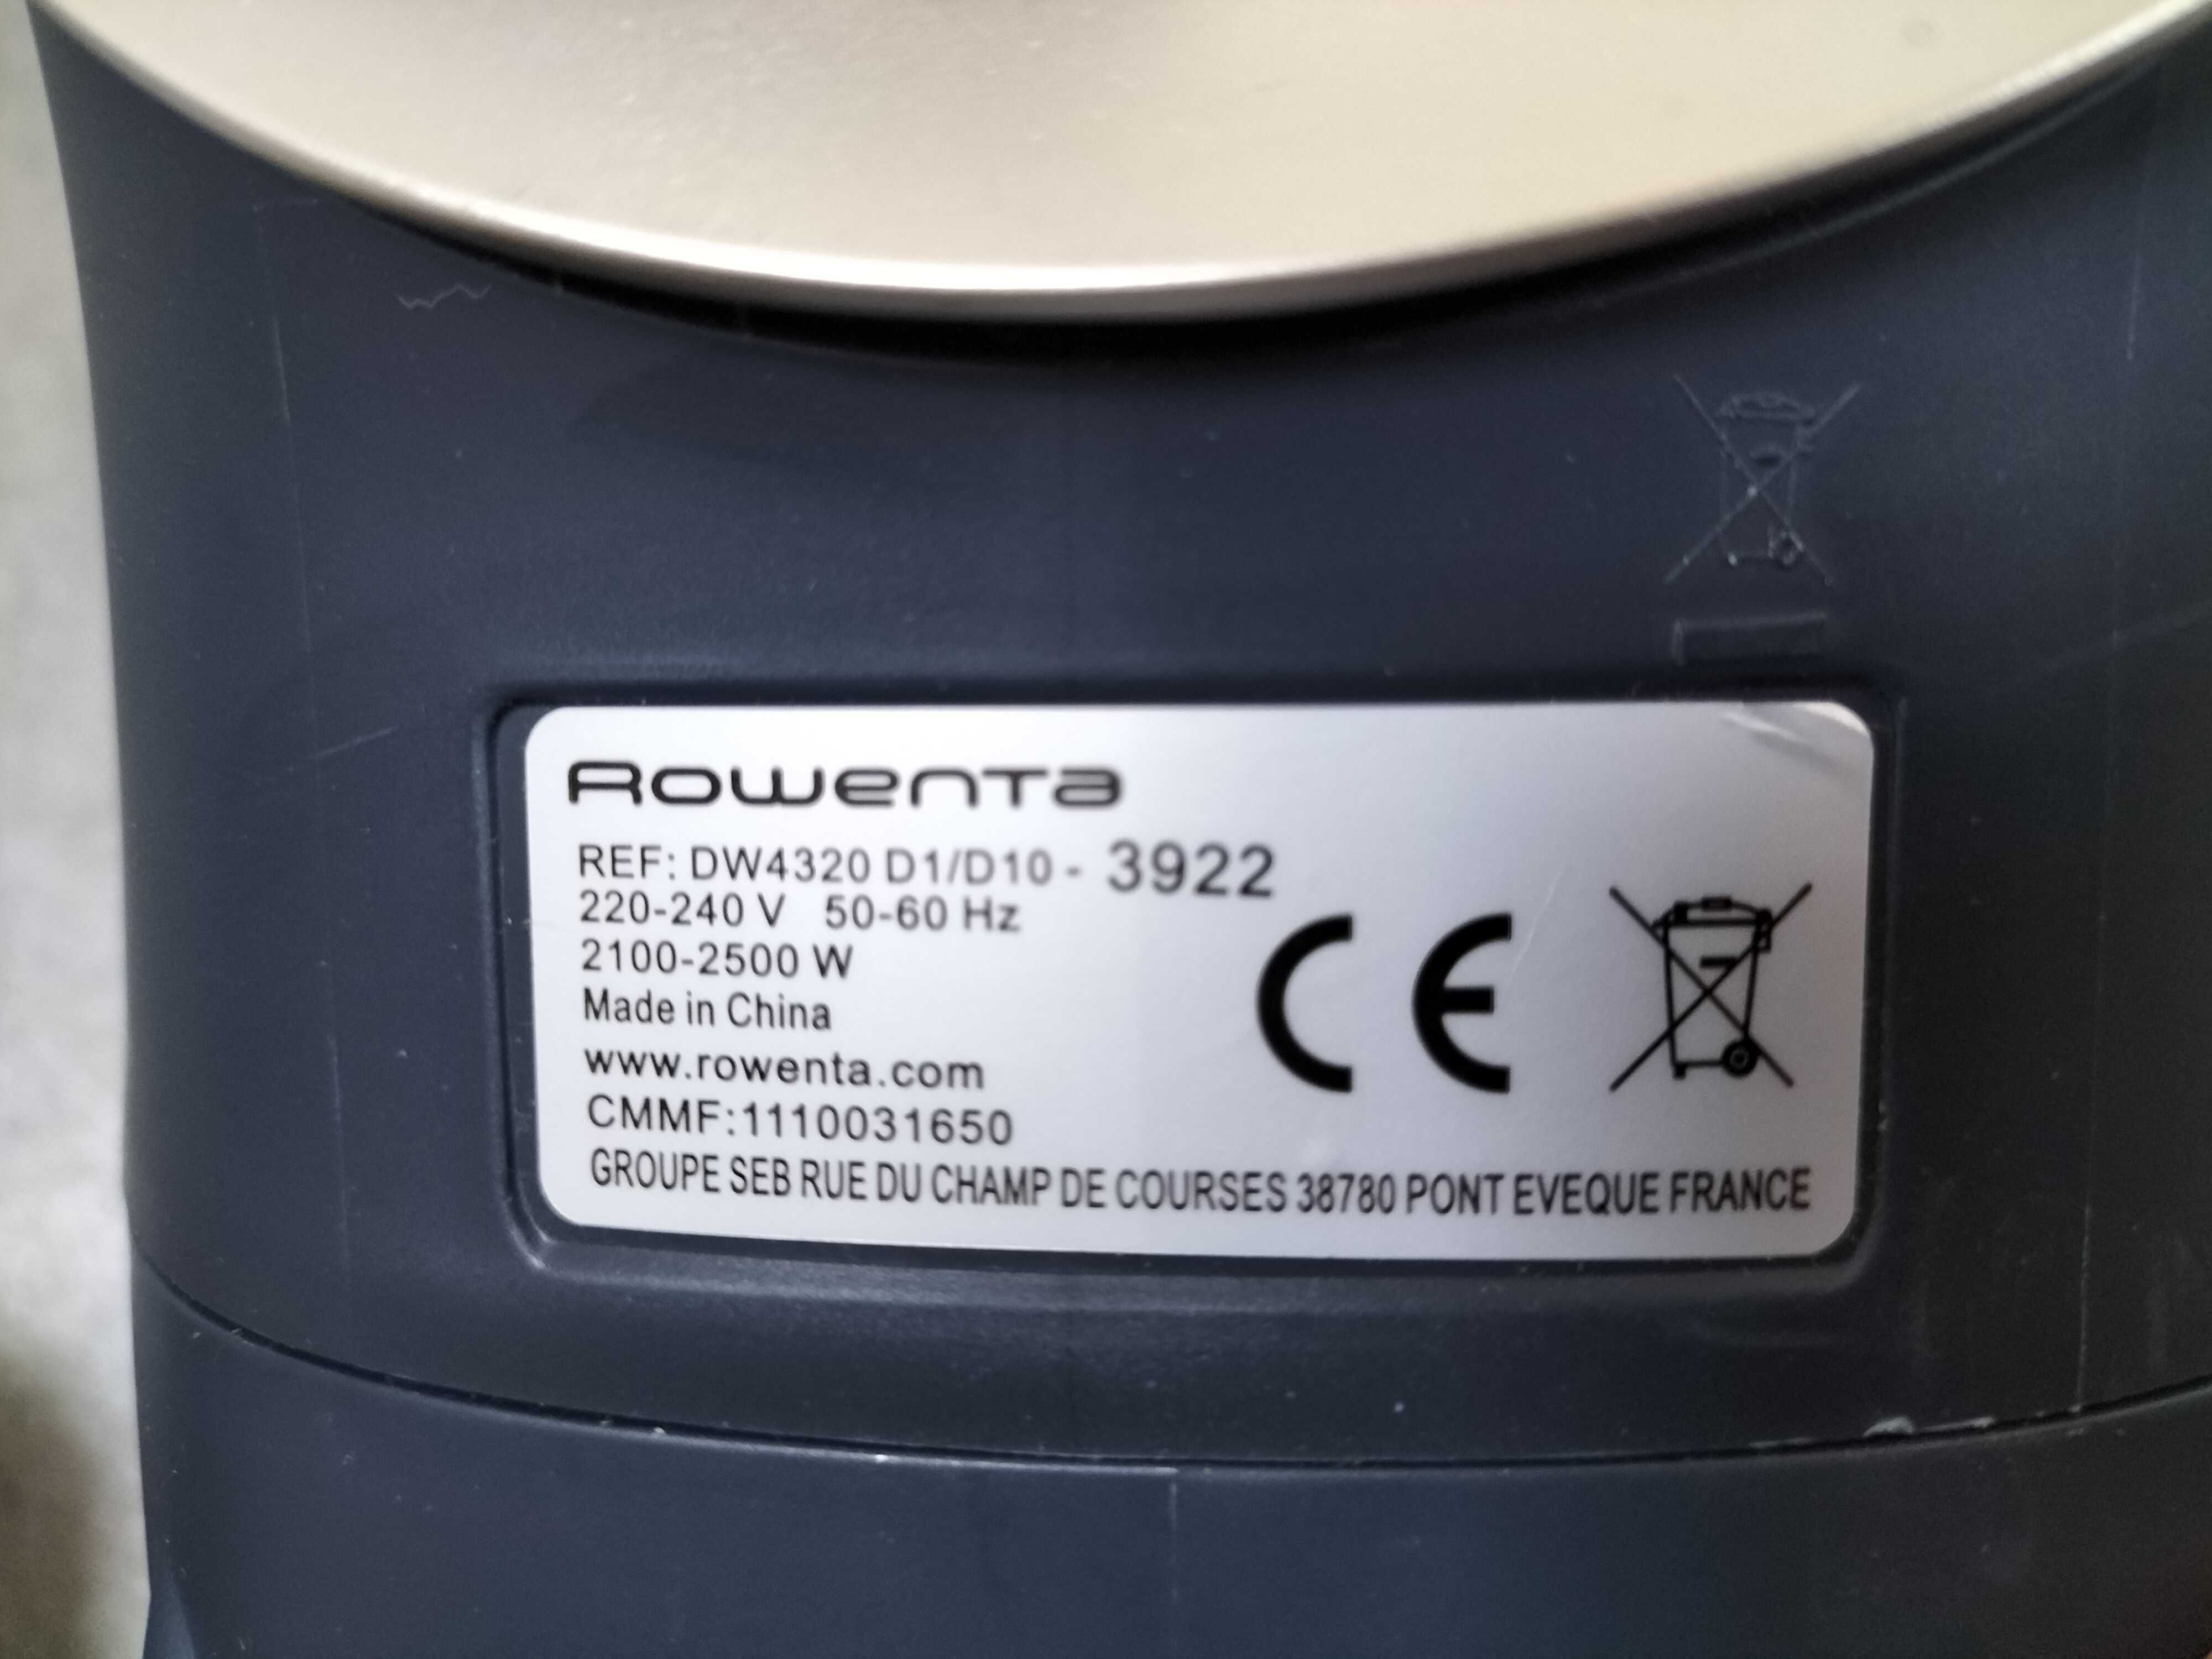 Nowe żelazko Rowenta DW4320D1 2500 W